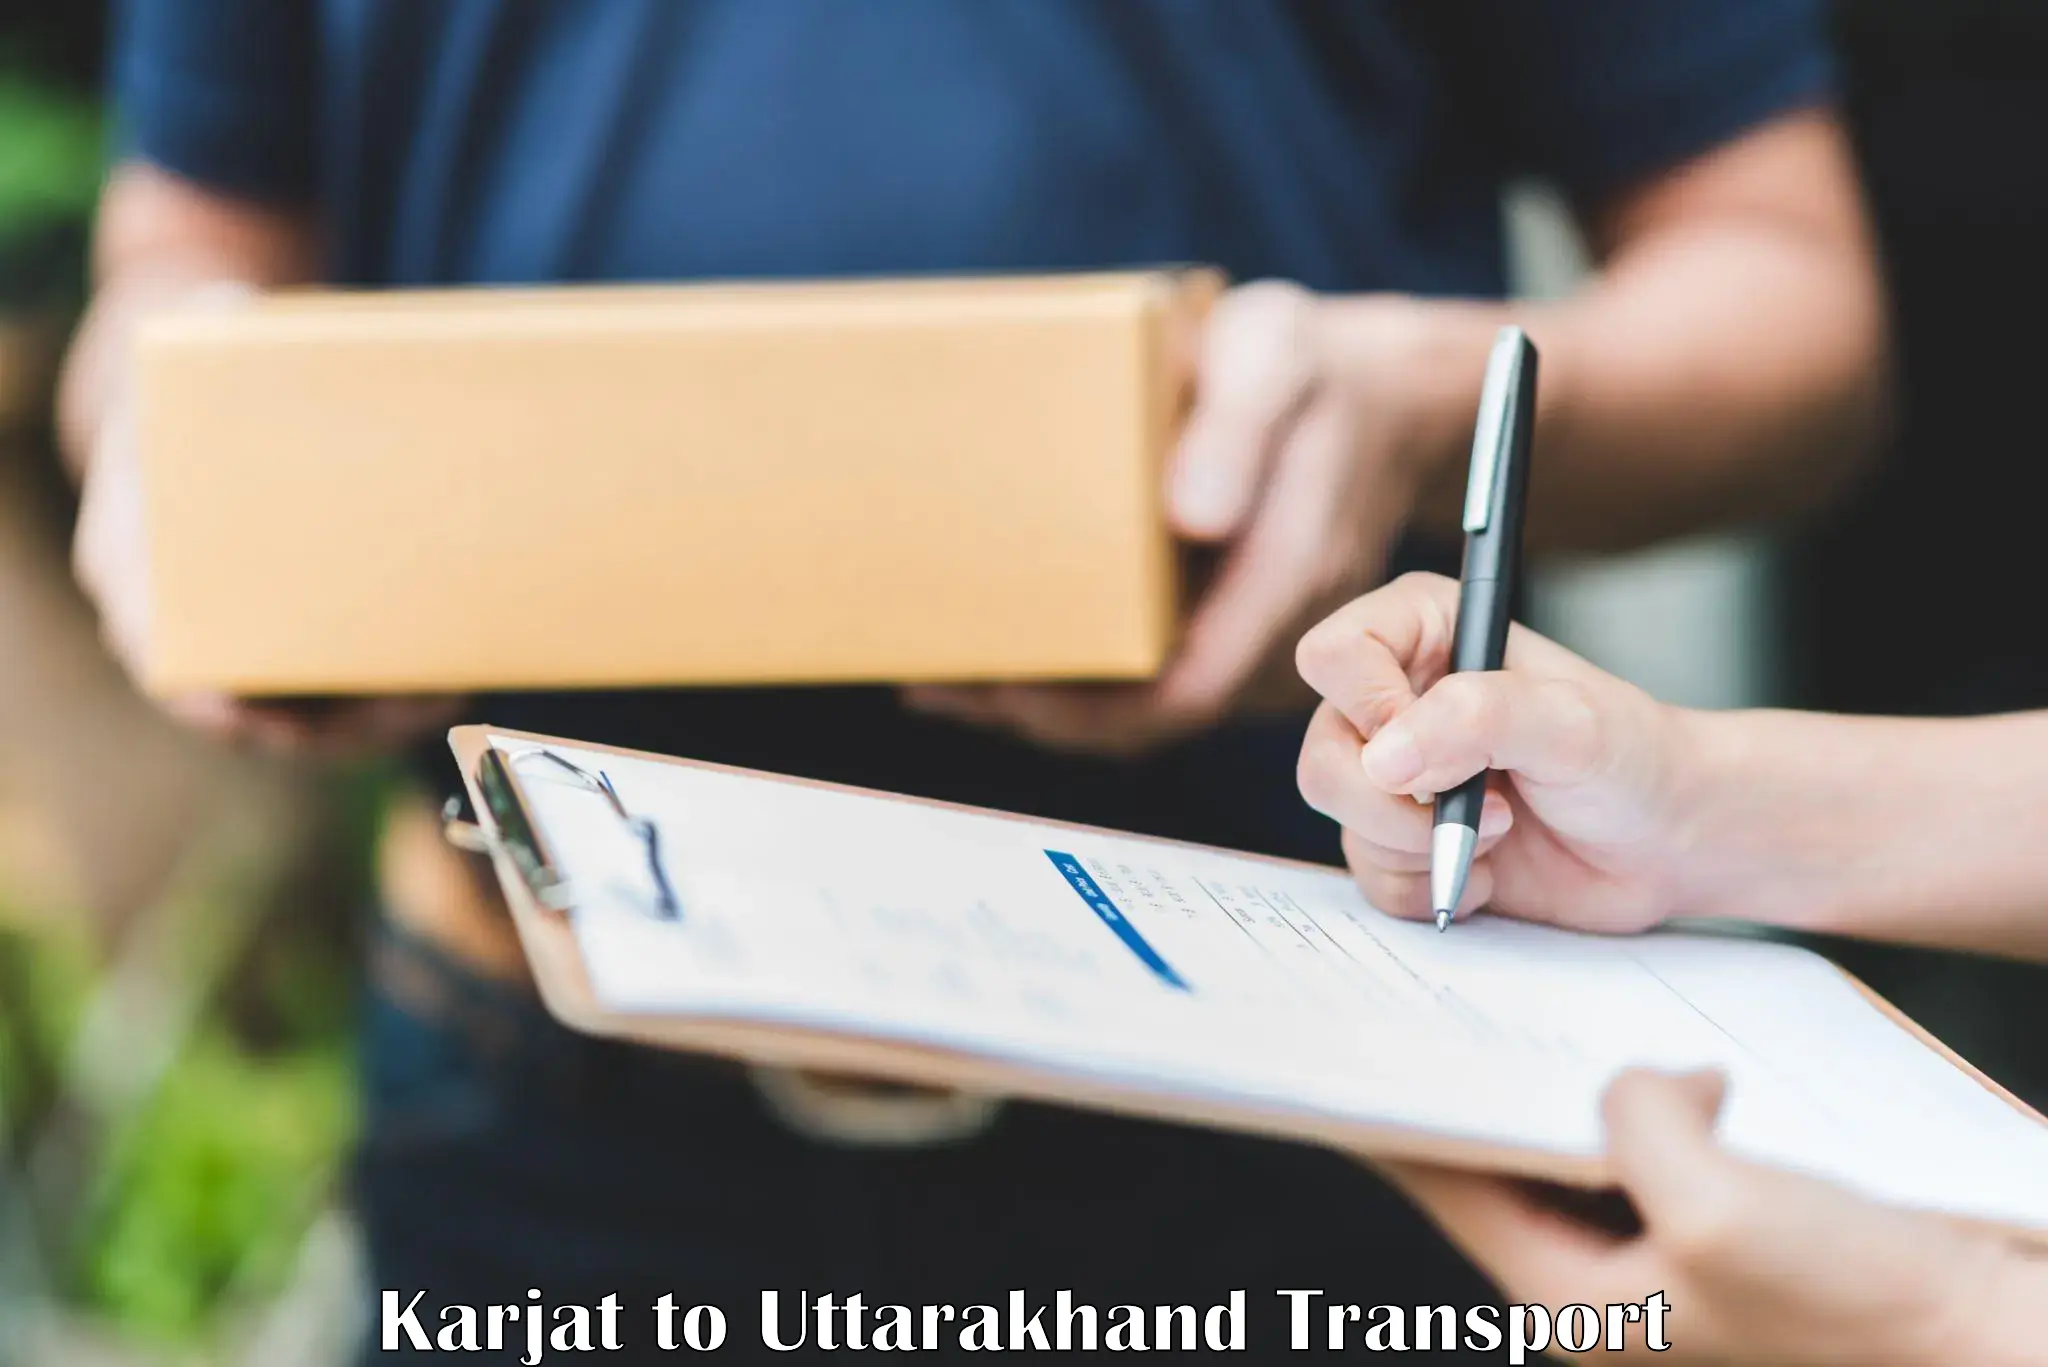 Container transport service Karjat to Kotdwara